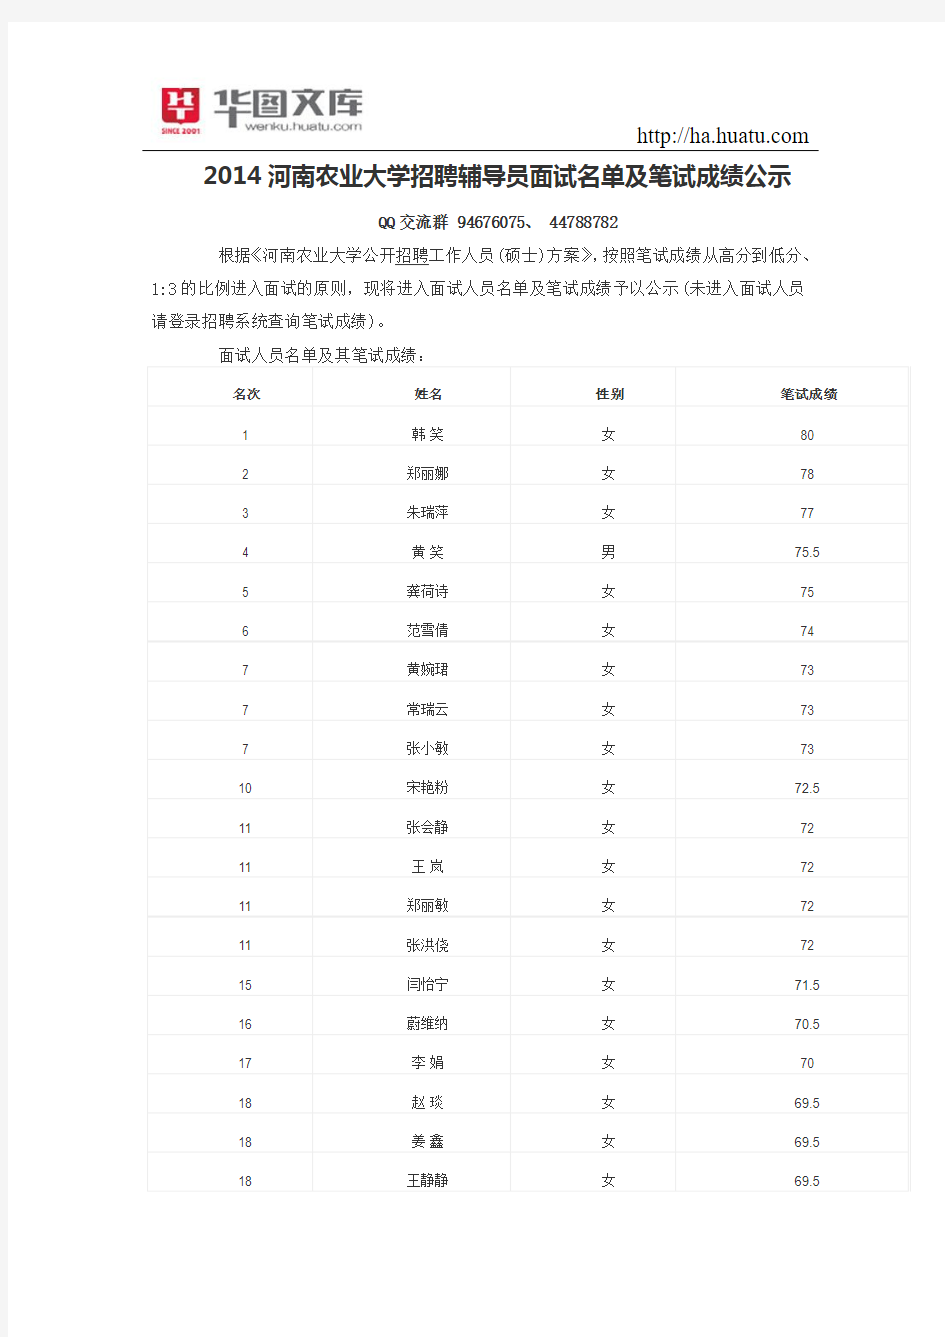 2014河南农业大学招聘辅导员面试名单及笔试成绩公示